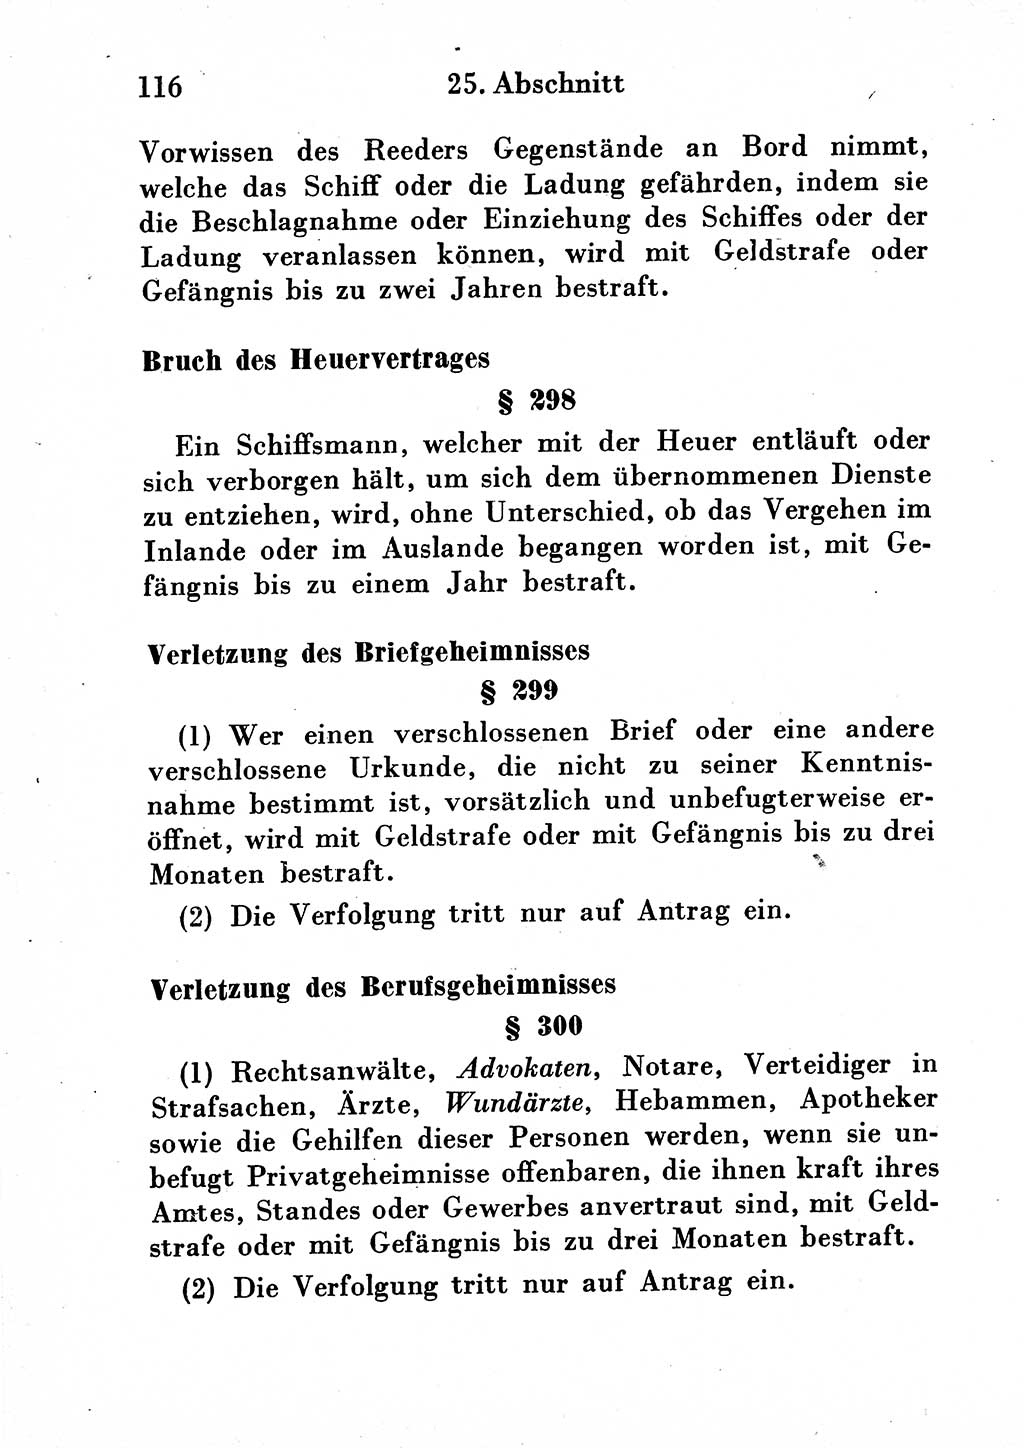 Strafgesetzbuch (StGB) und andere Strafgesetze [Deutsche Demokratische Republik (DDR)] 1954, Seite 116 (StGB Strafges. DDR 1954, S. 116)